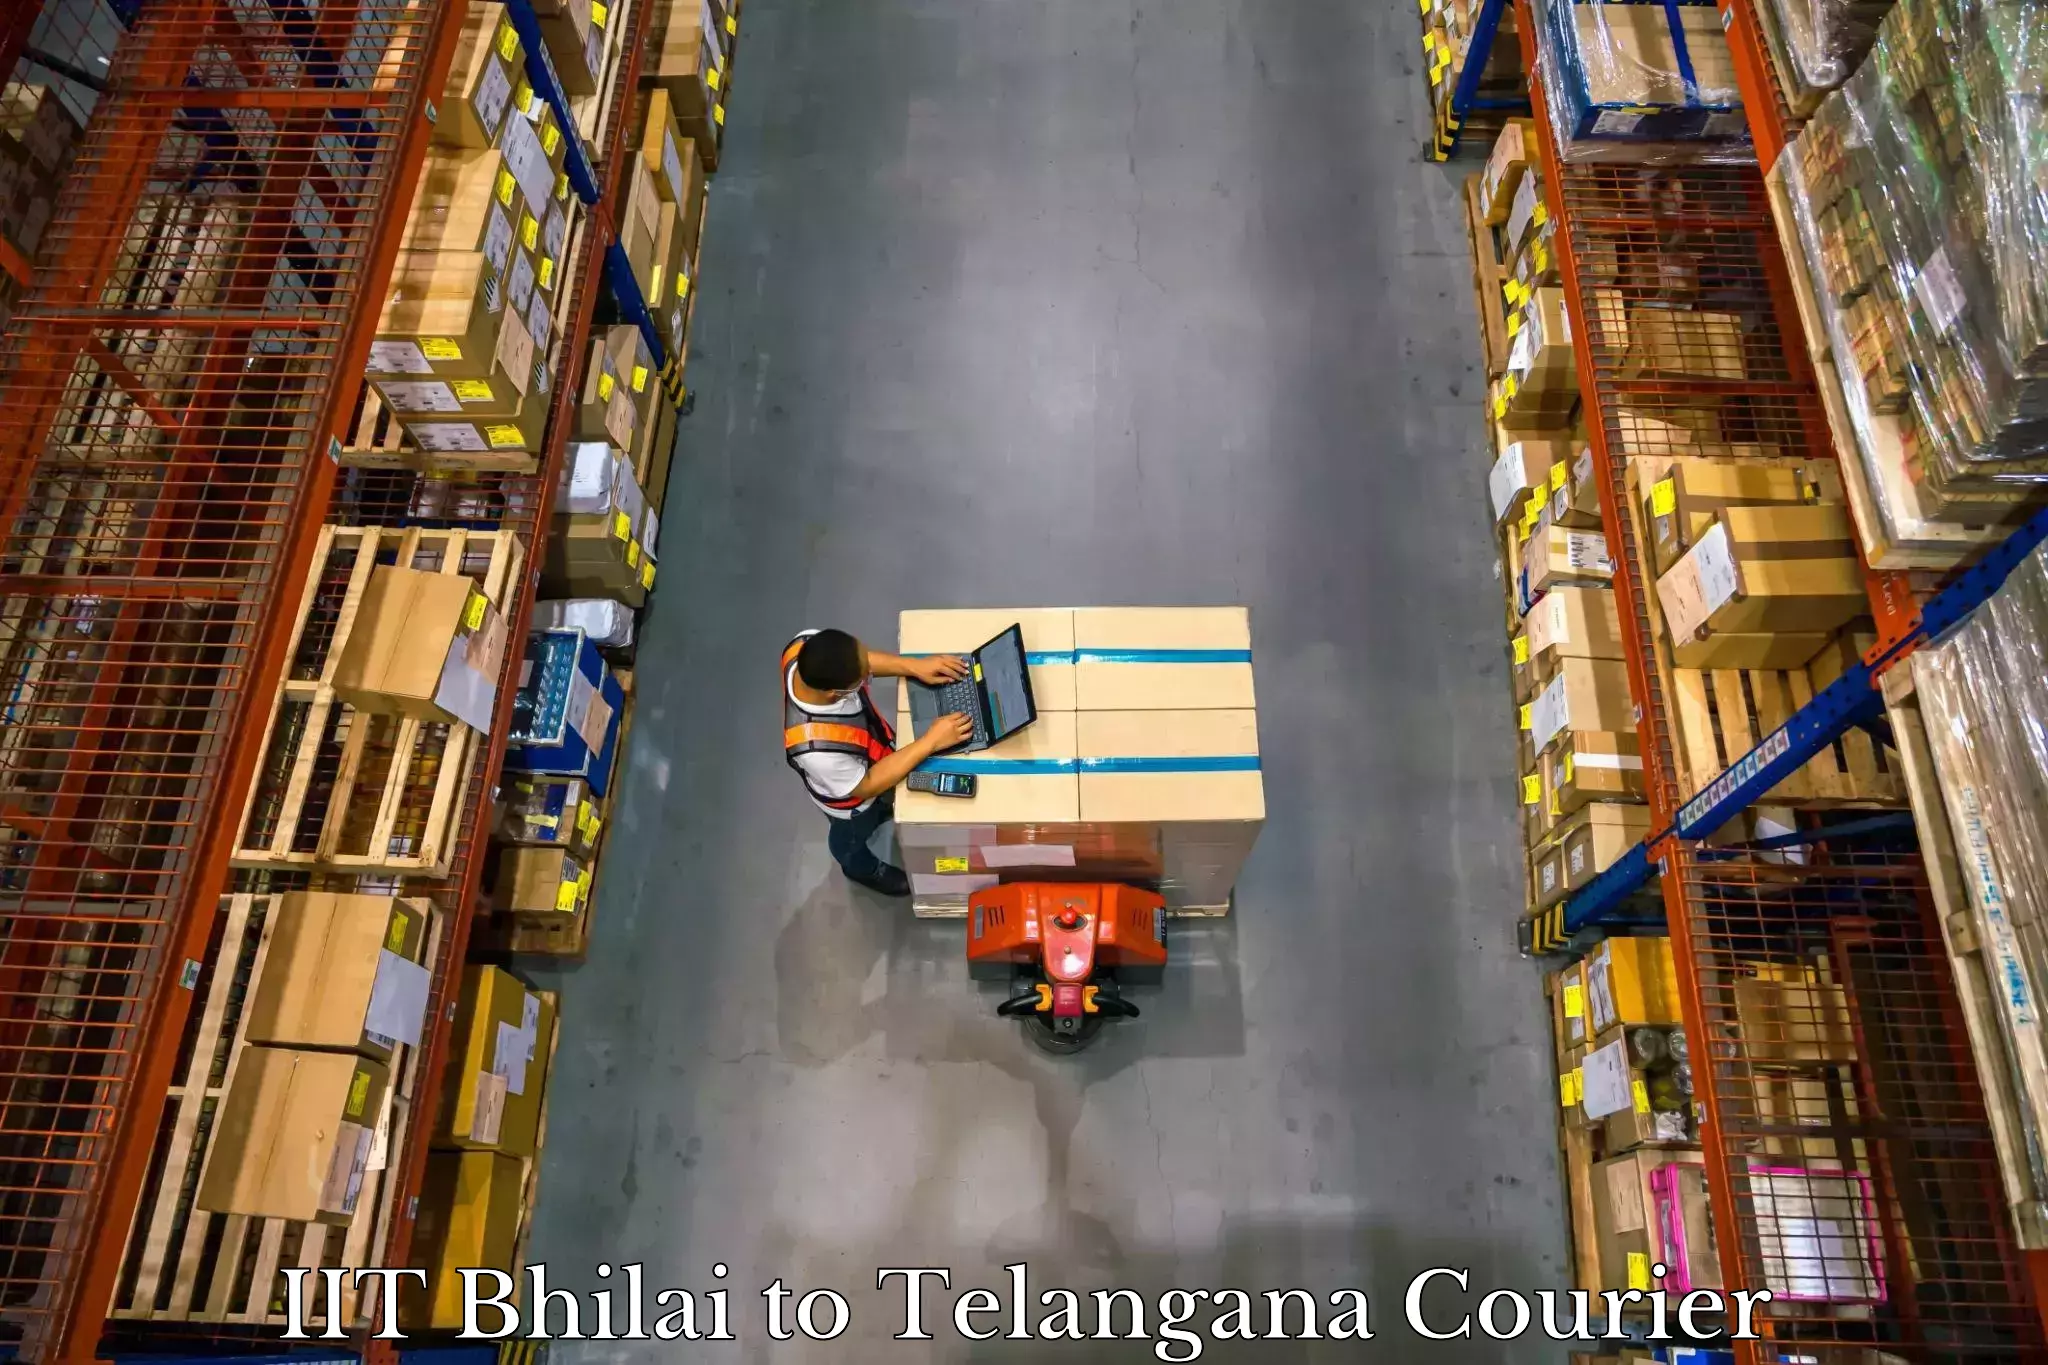 Global baggage shipping IIT Bhilai to Sathupally